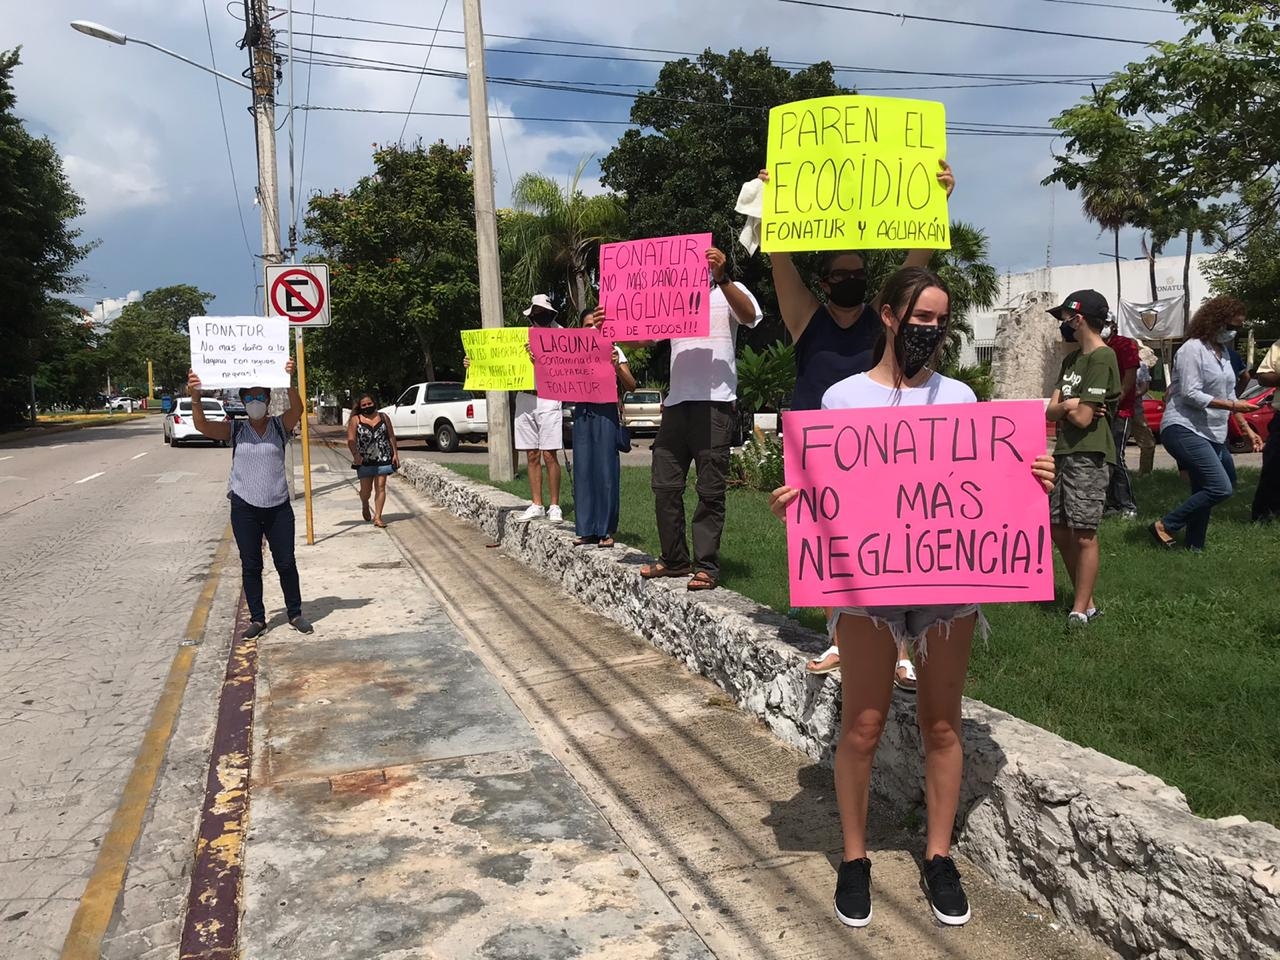 Protestan contra el Fonatur y Aguakan en Cancún